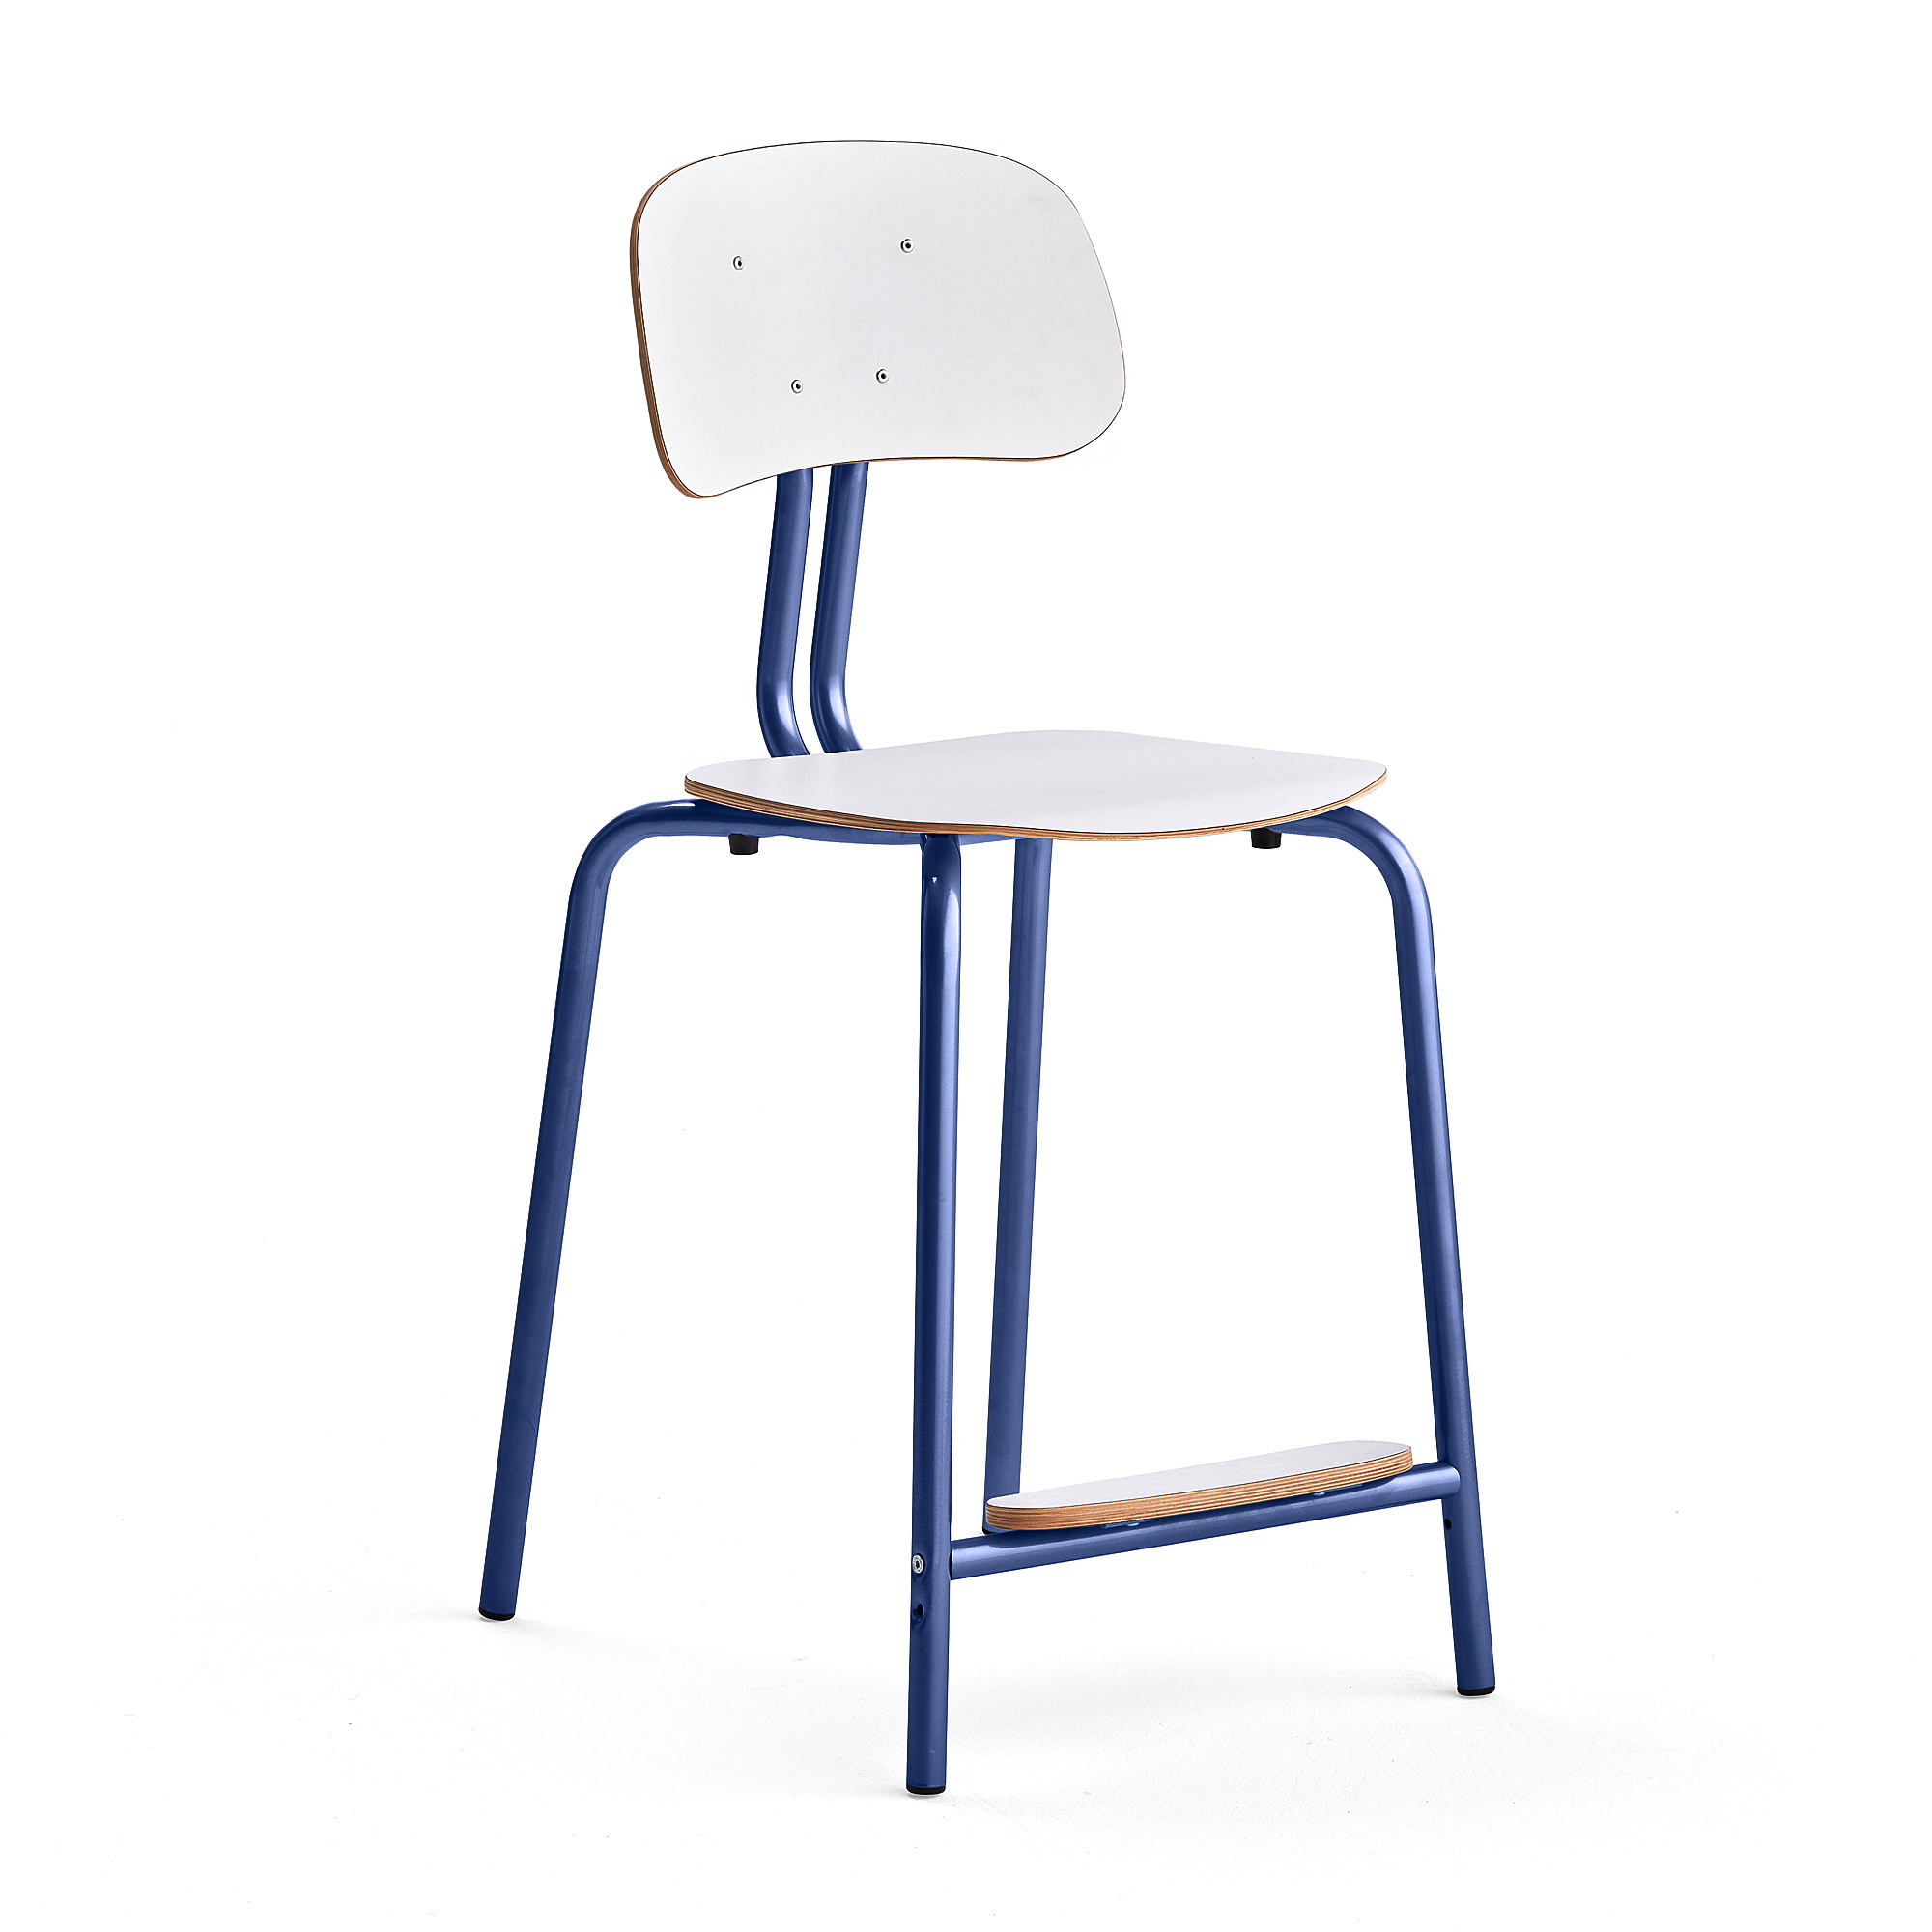 Školní židle YNGVE, 4 nohy, výška 610 mm, tmavě modrá/bílá